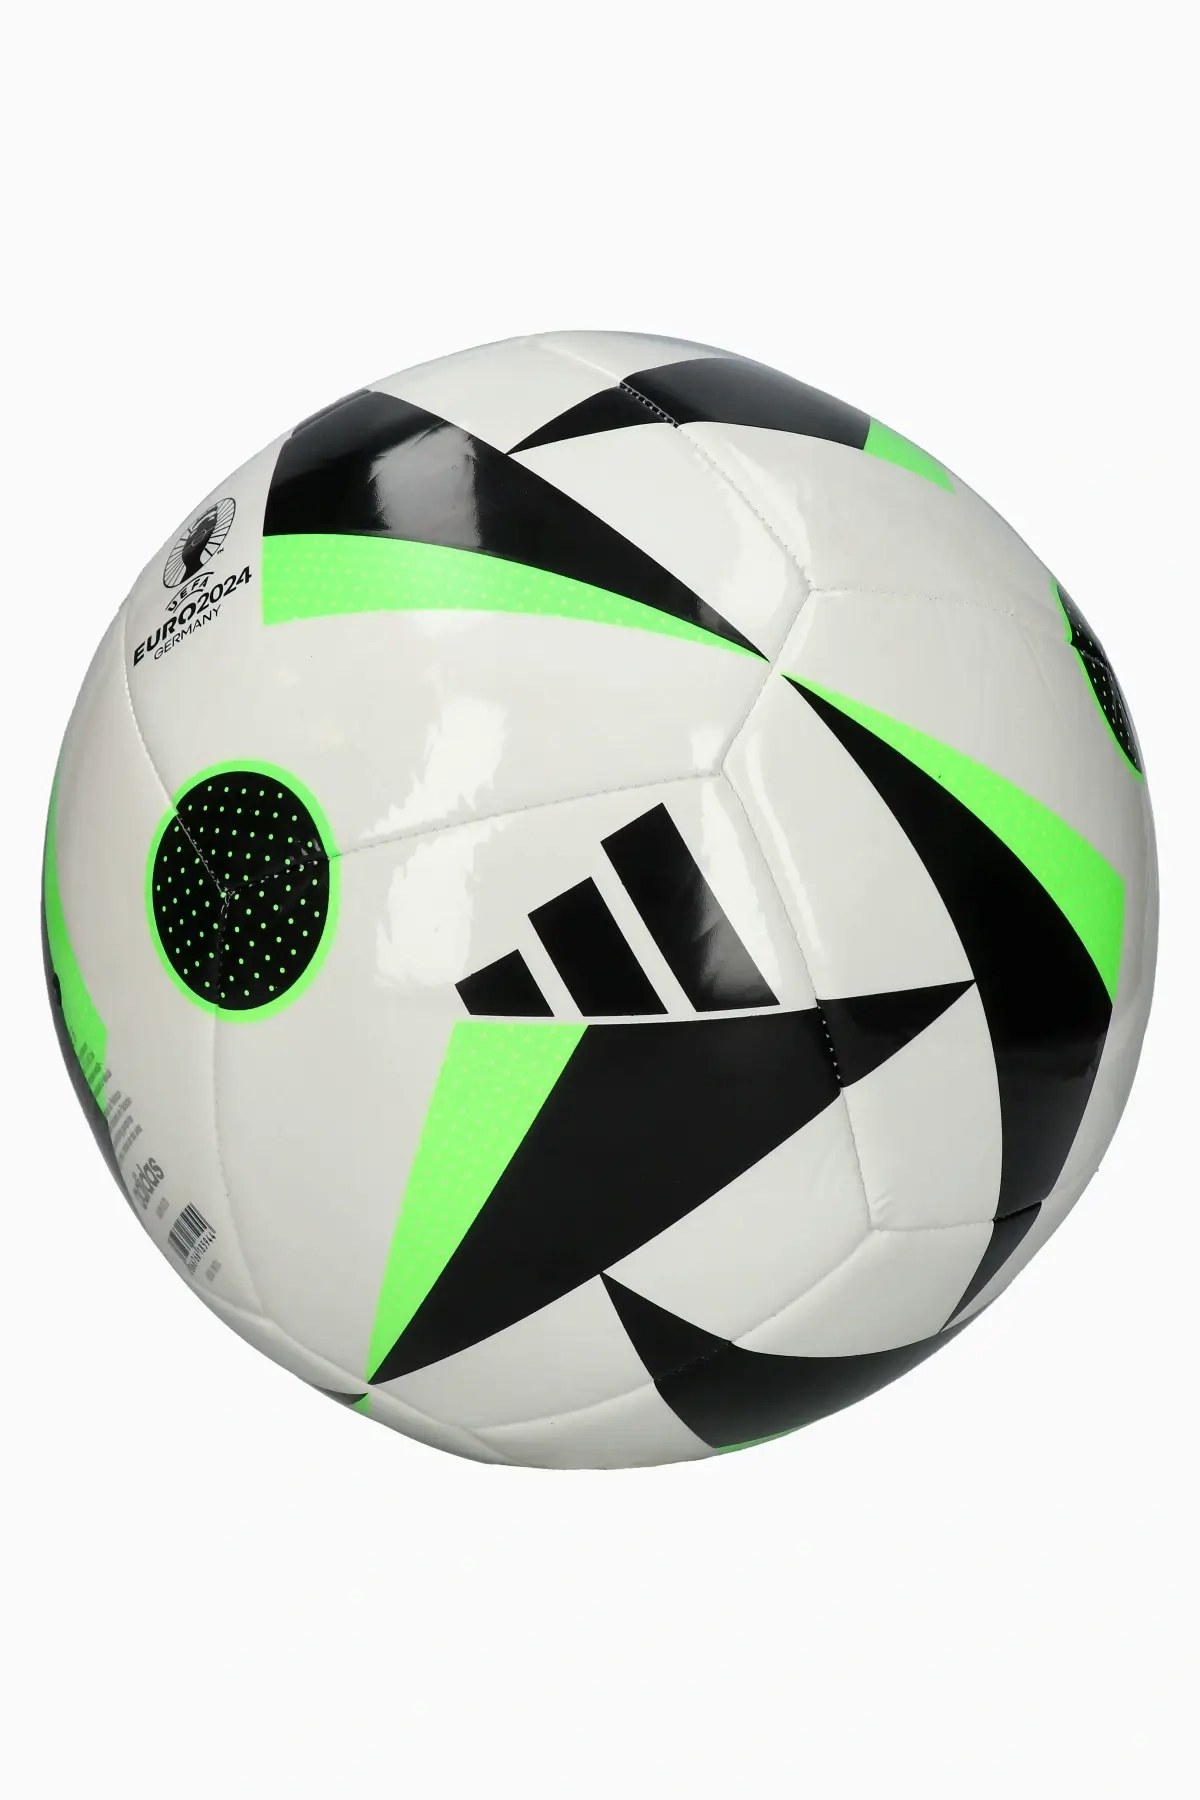 Balones de fútbol profesional, semiprofesional y para entrenamiento